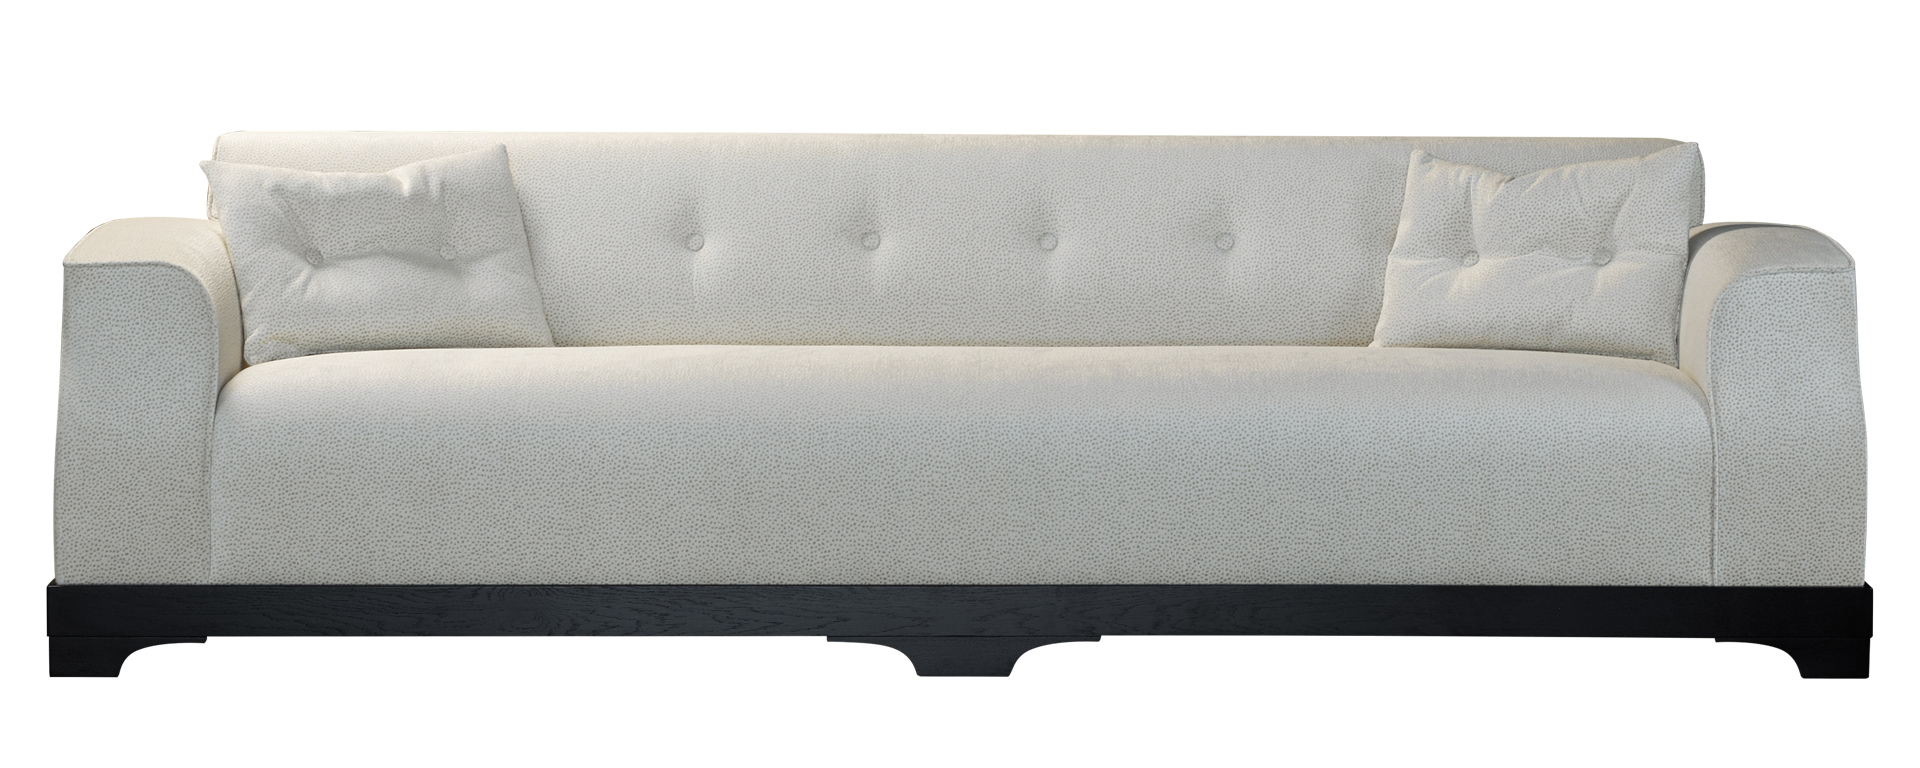 Mogador — деревянный диван с обивкой из ткани или кожи, со спинкой и подушками с капитоне из каталога Promemoria | Promemoria